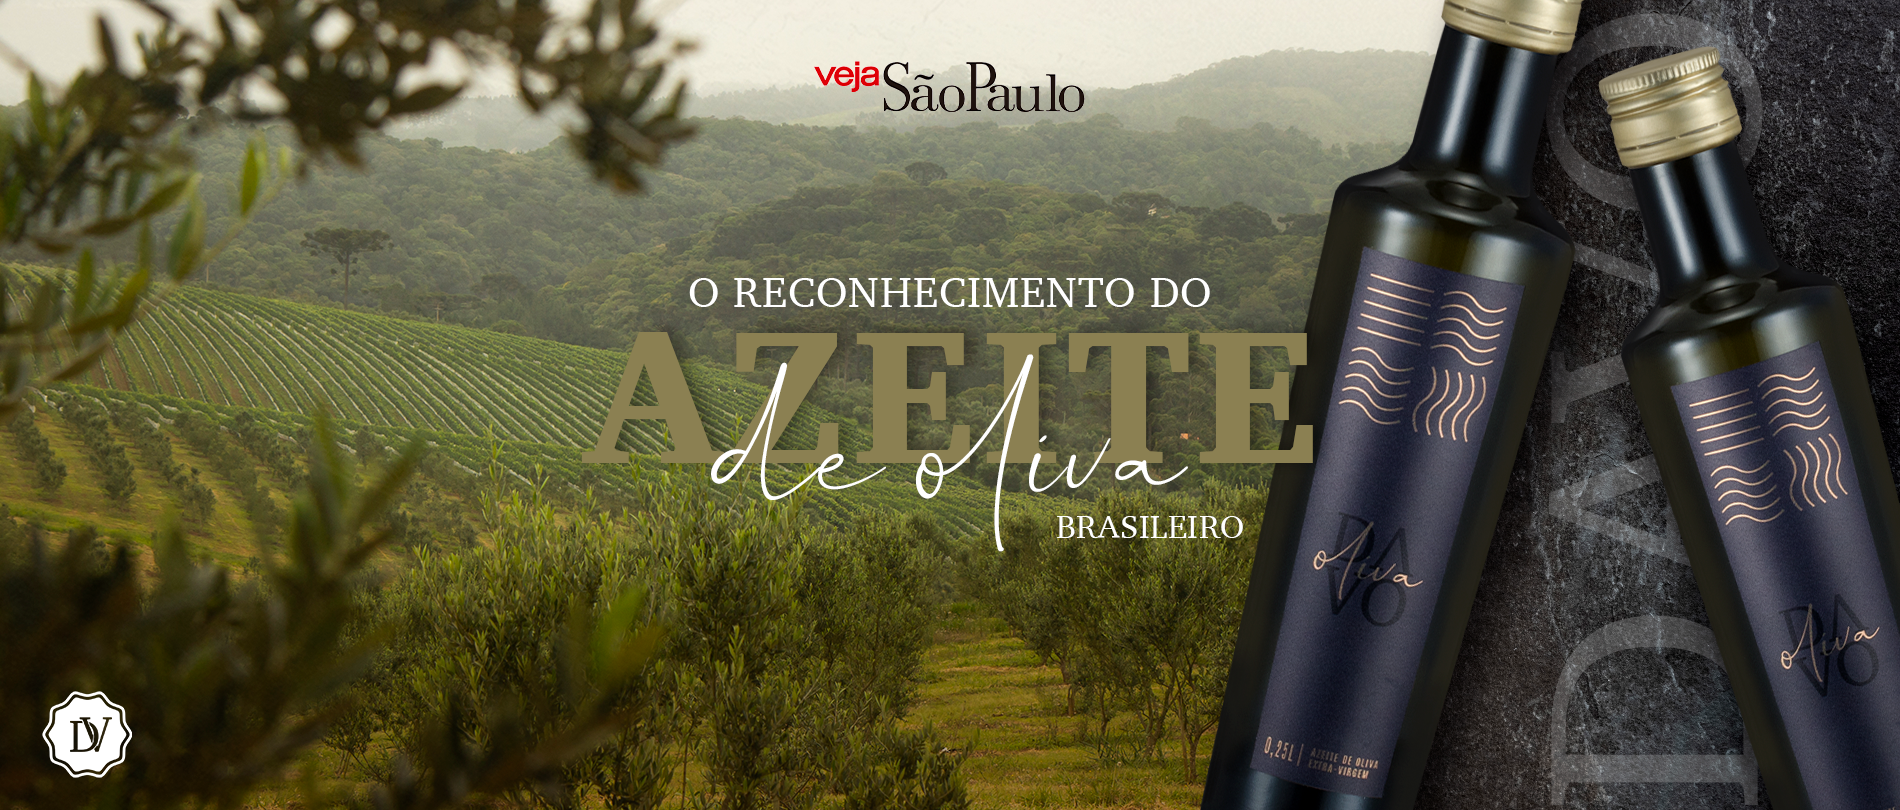 O reconhecimento do azeite de oliva brasileiro